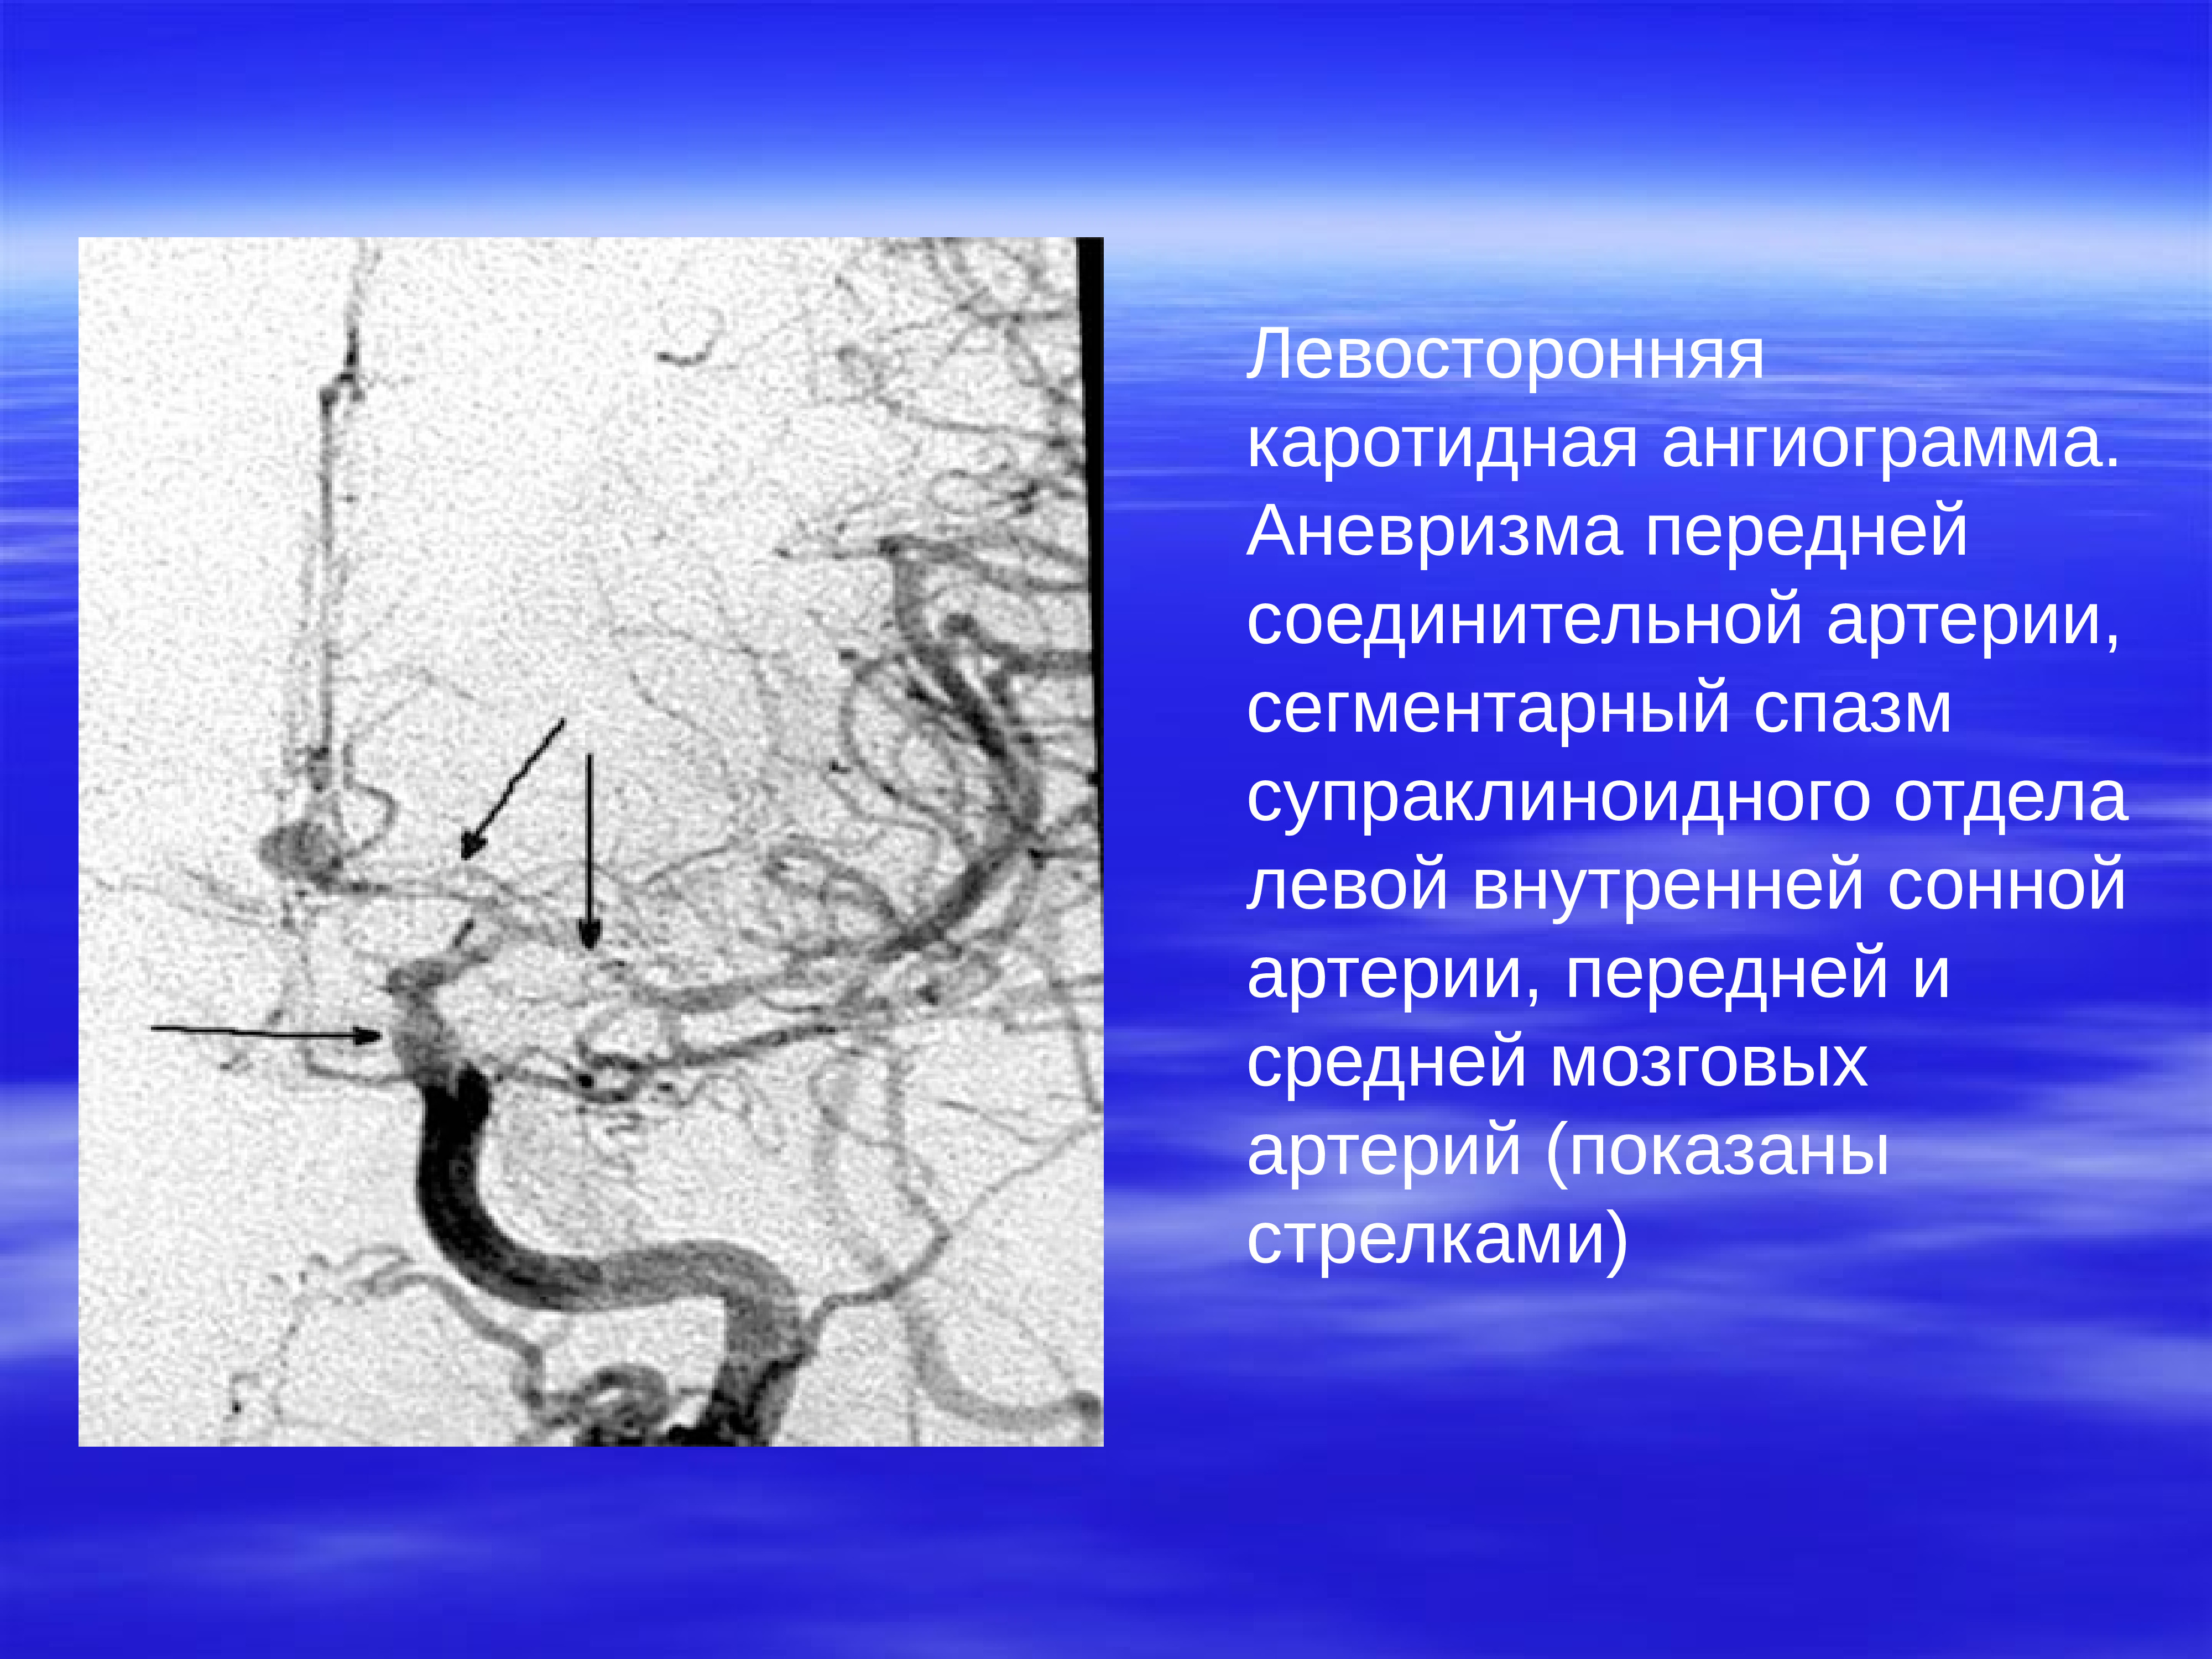 Аневризма сонной артерии что это. Аневризма коммуникантного сегмента ВСА. Супраклиноидный отдел ВСА аневризма. Аневризма левой внутренней сонной артерии сегмент с6. Супраклиноидный отдел внутренней сонной артерии на кт.